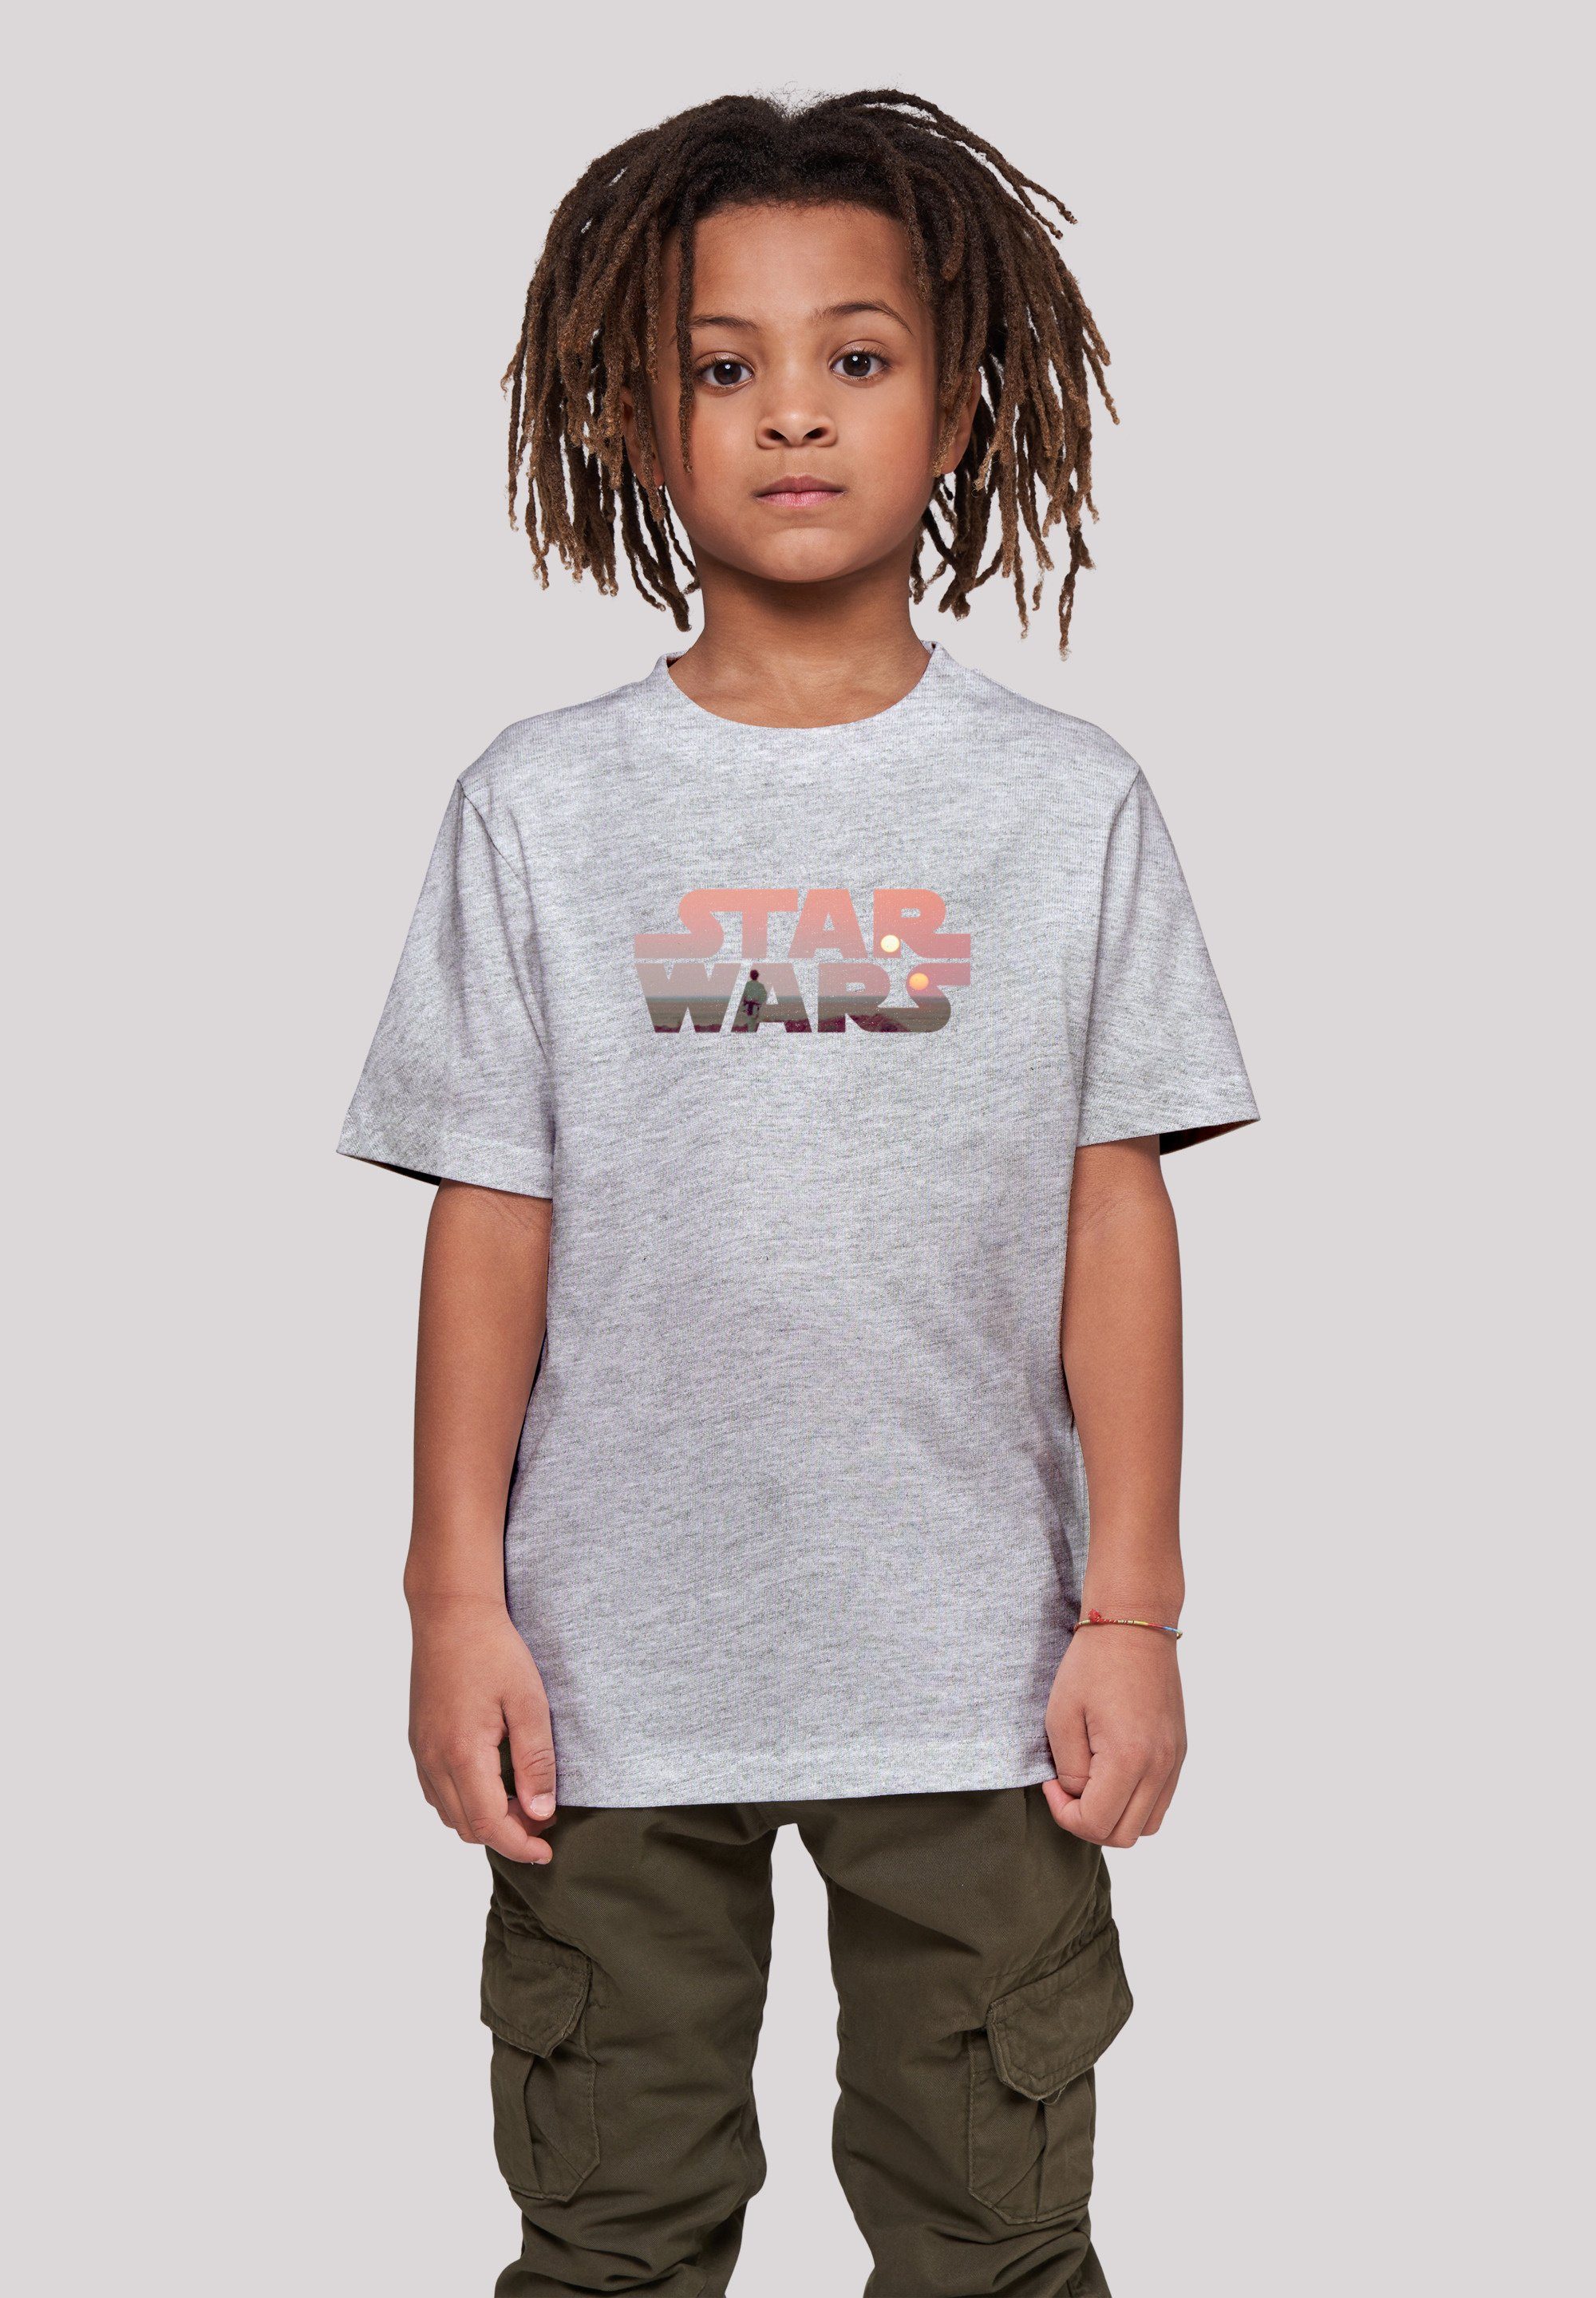 wohlfühlen Wars Print, T-Shirt Bequemer Logo Schnitt F4NT4STIC Tatooine Star rundum zum